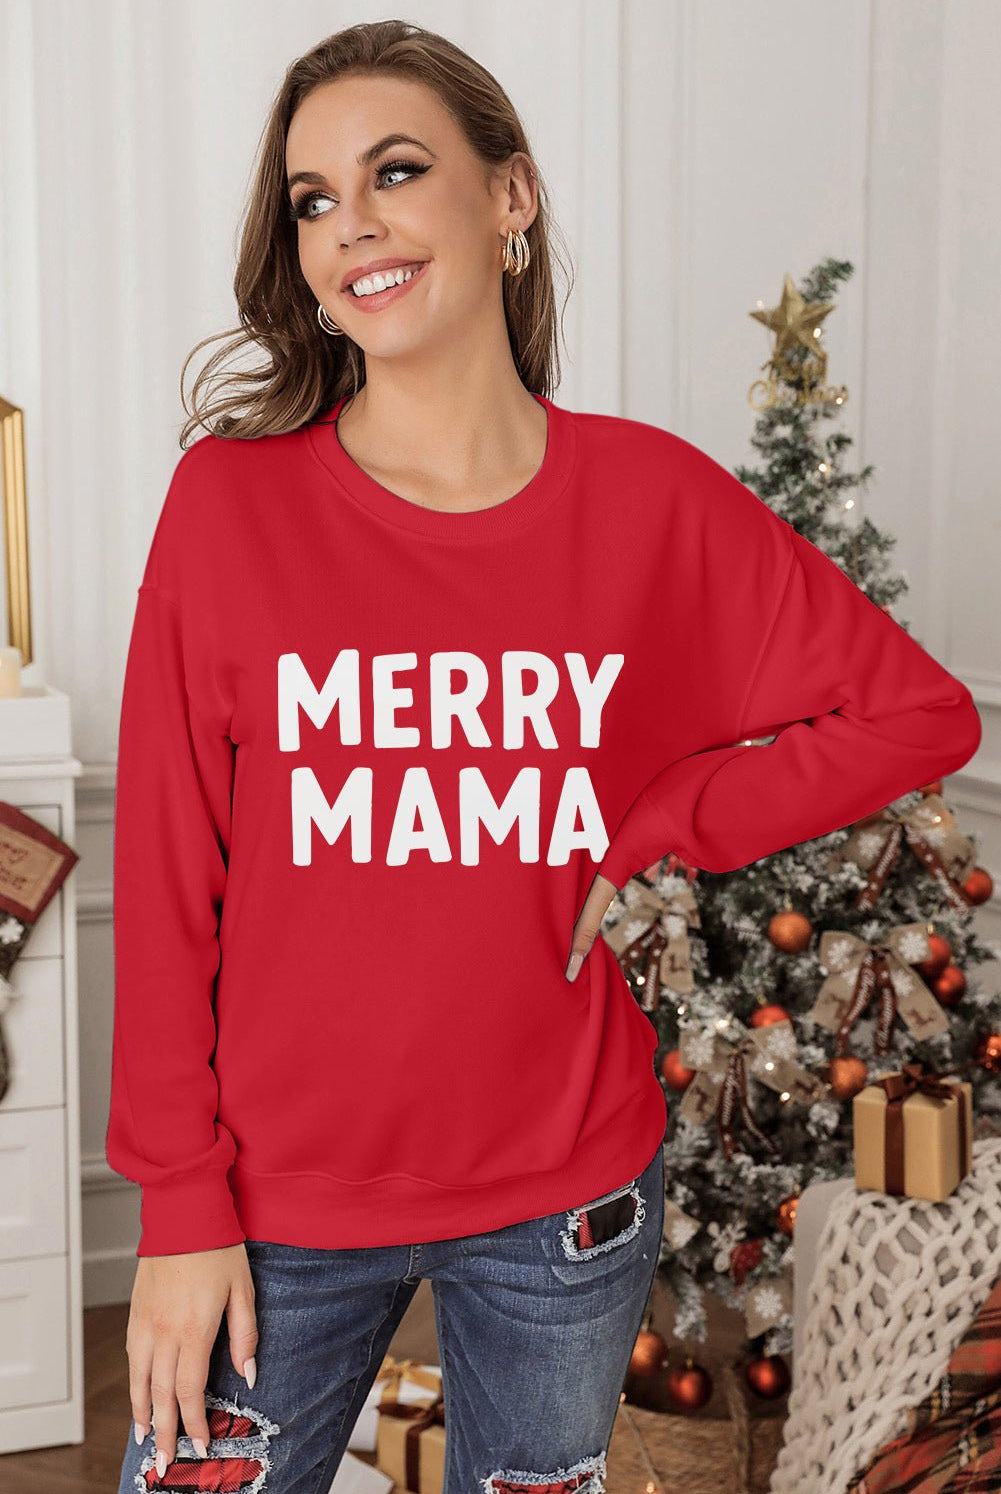 MERRY MAMA Graphic Round Neck Sweatshirt - GemThreads Boutique